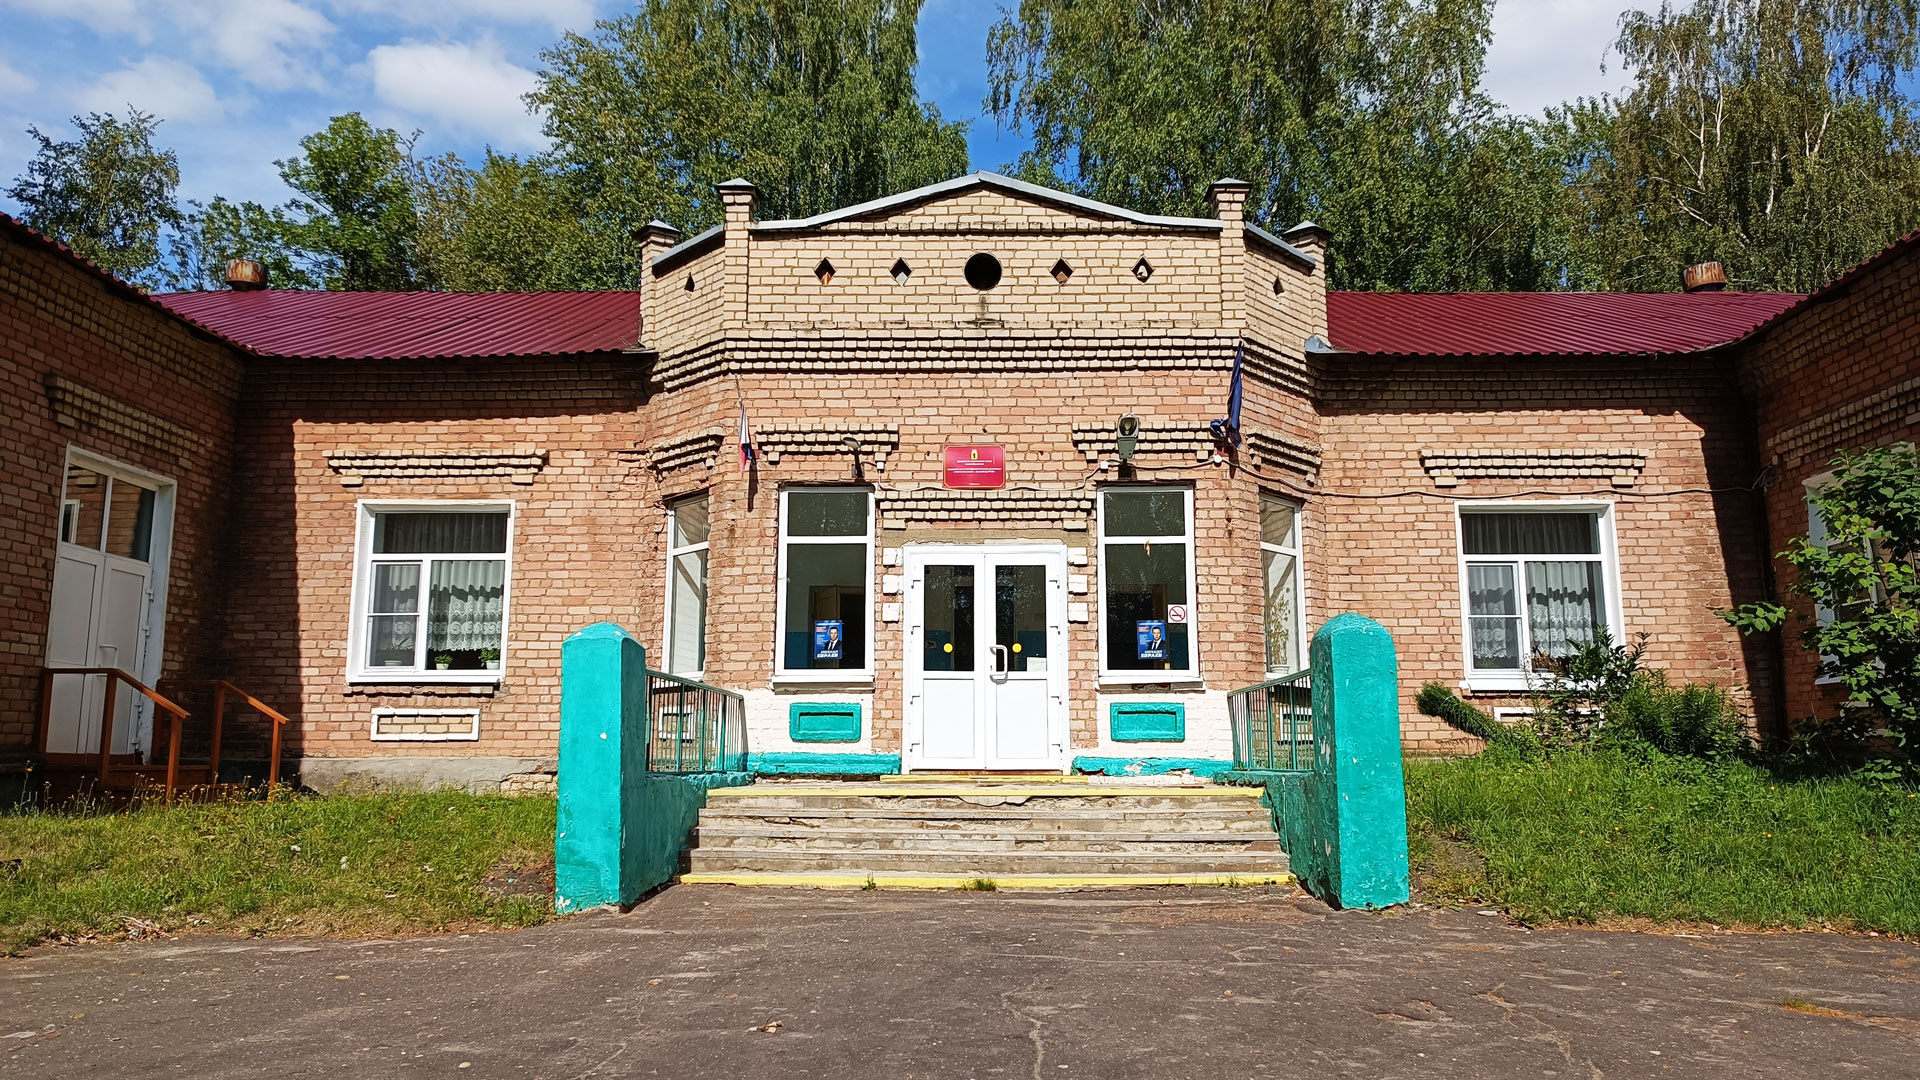 Начальная школа – детский сад 85 Ярославль: общий вид здания.